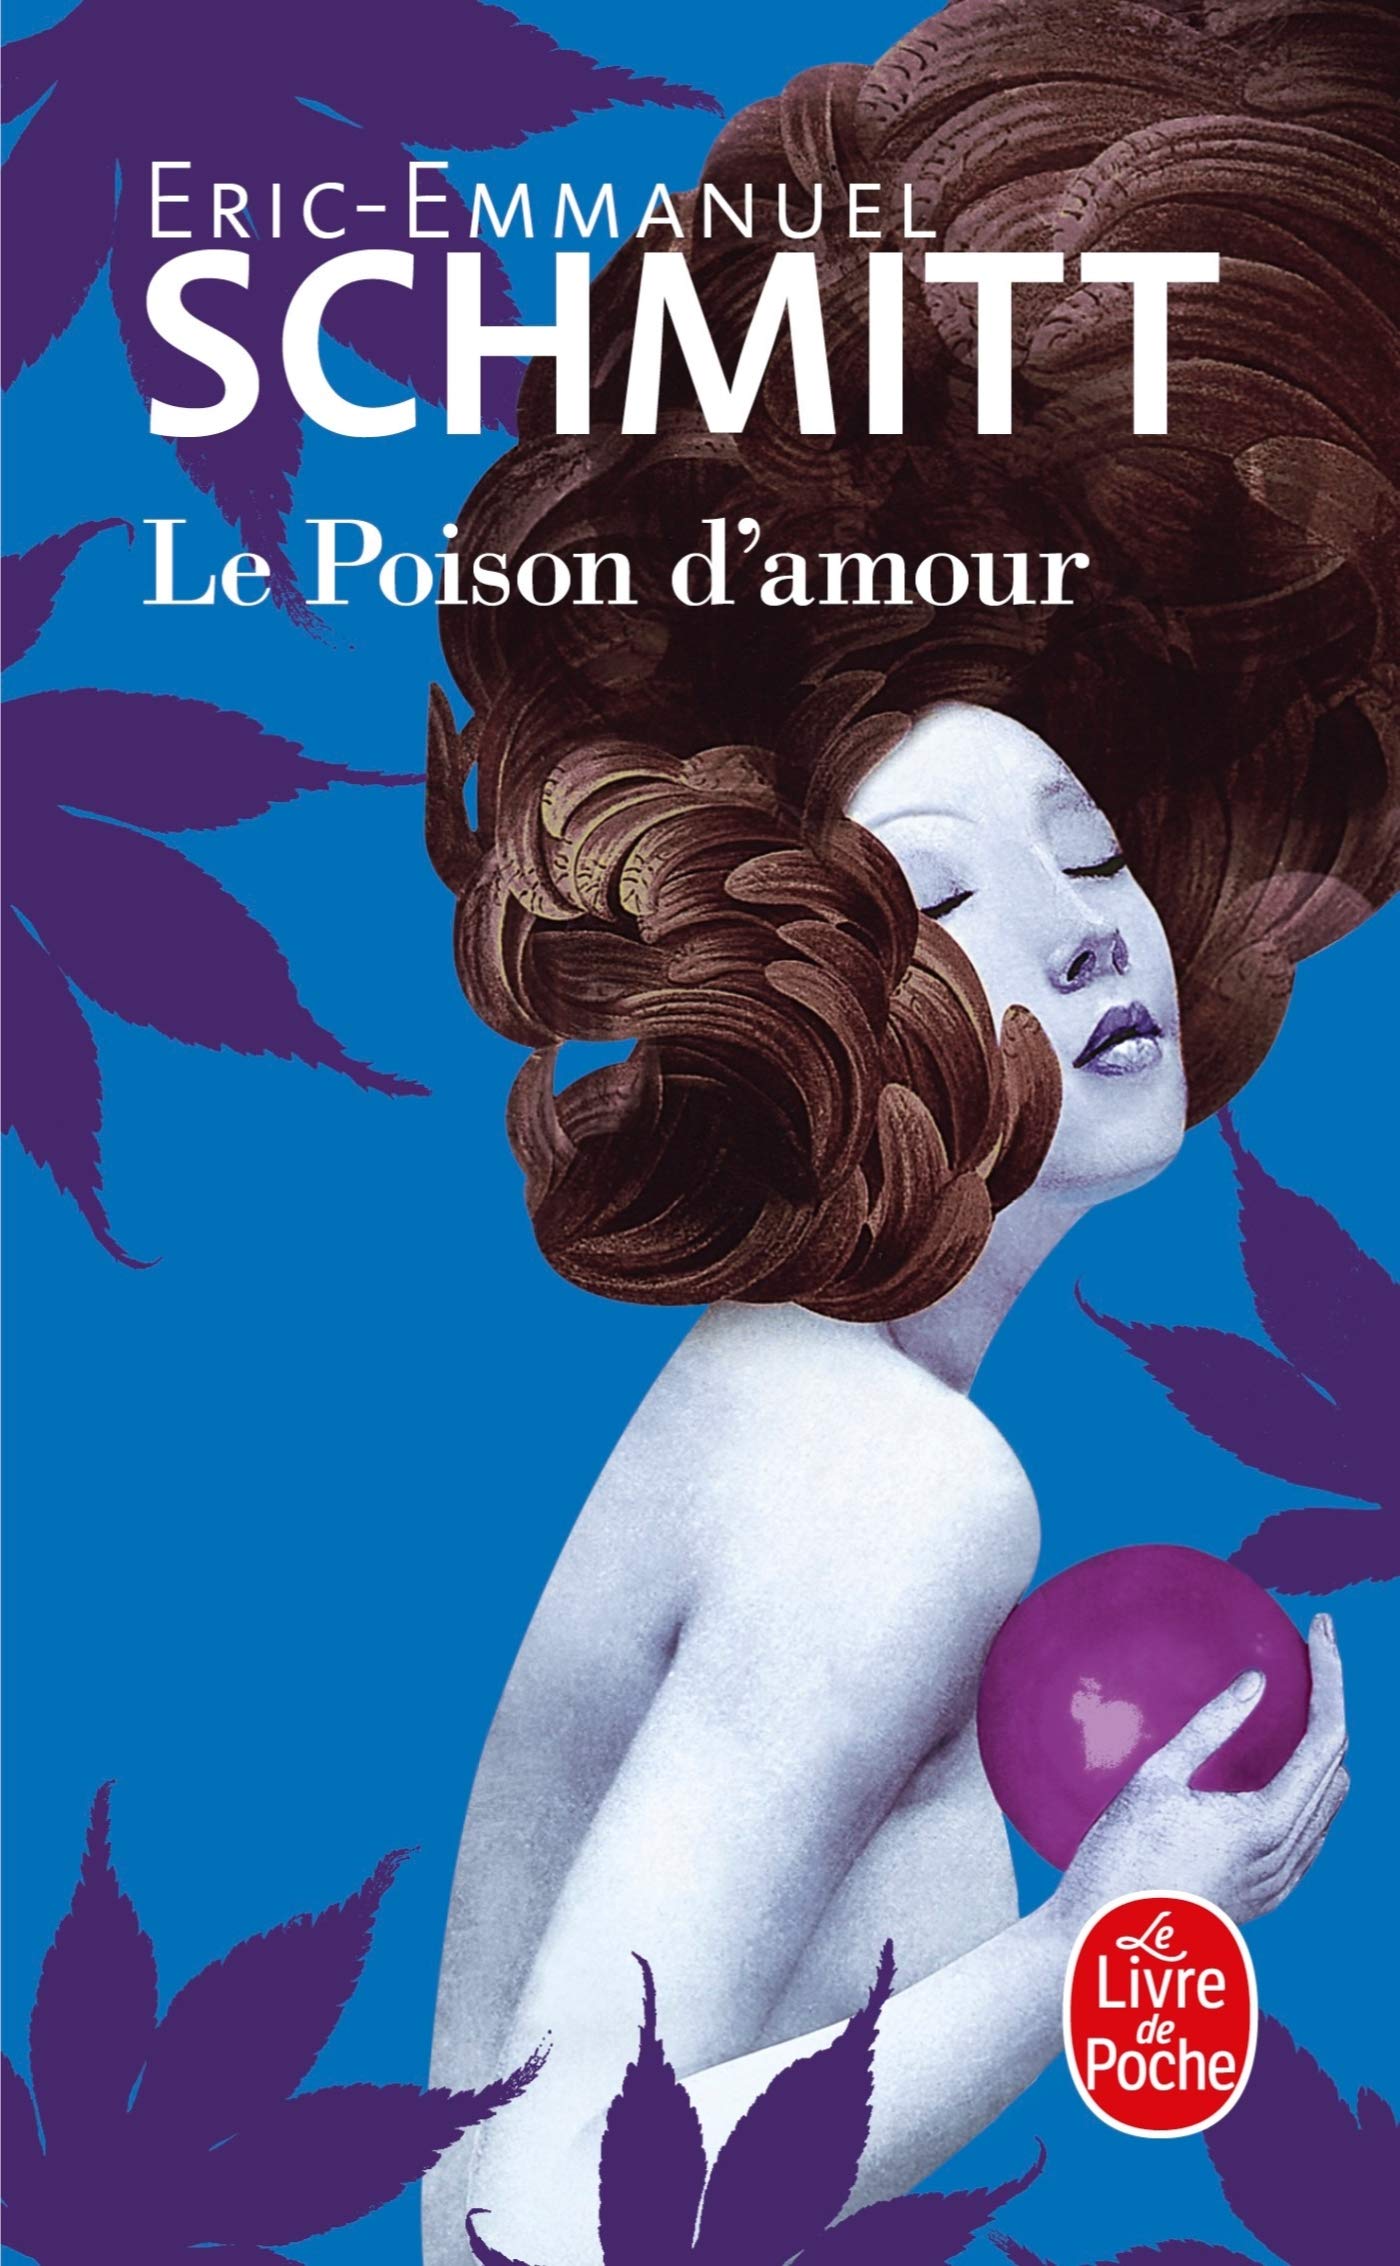 法国魅力才子Éric-Emmanuel Schmitt作品 《LE POISON D'AMOUR》